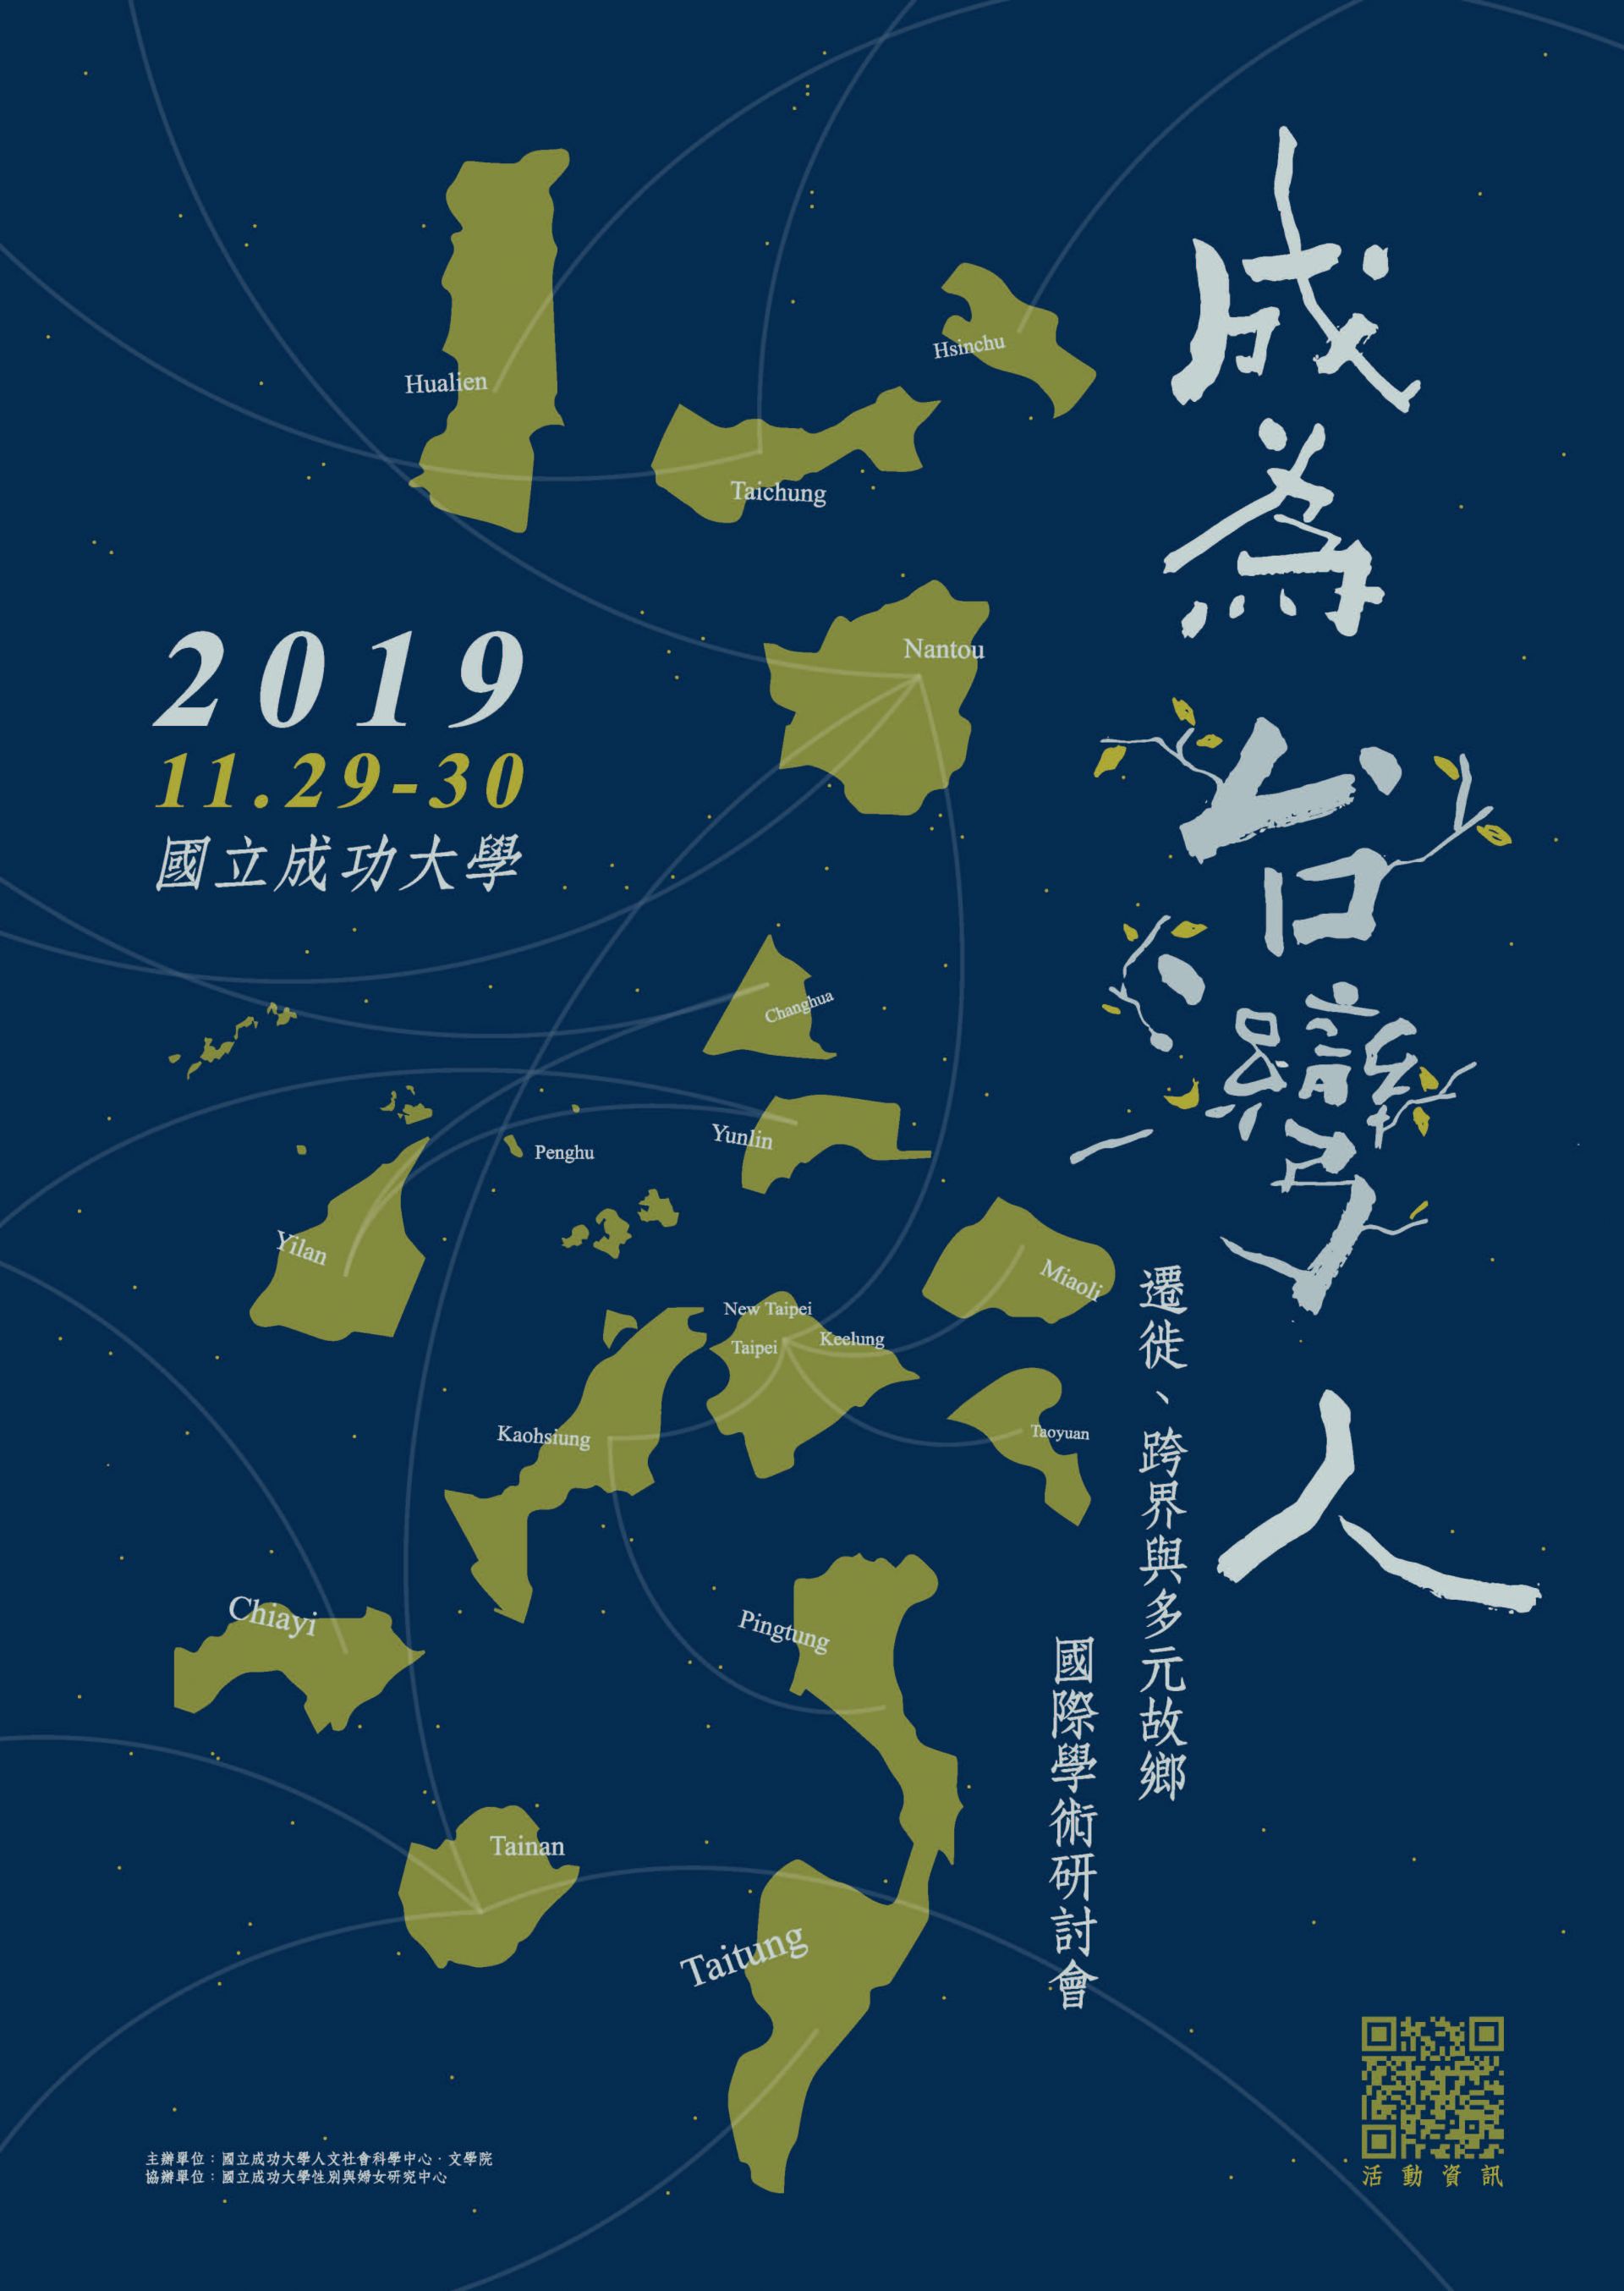 成為臺灣人:遷徙、跨界與多元故鄉 國際學術研討會